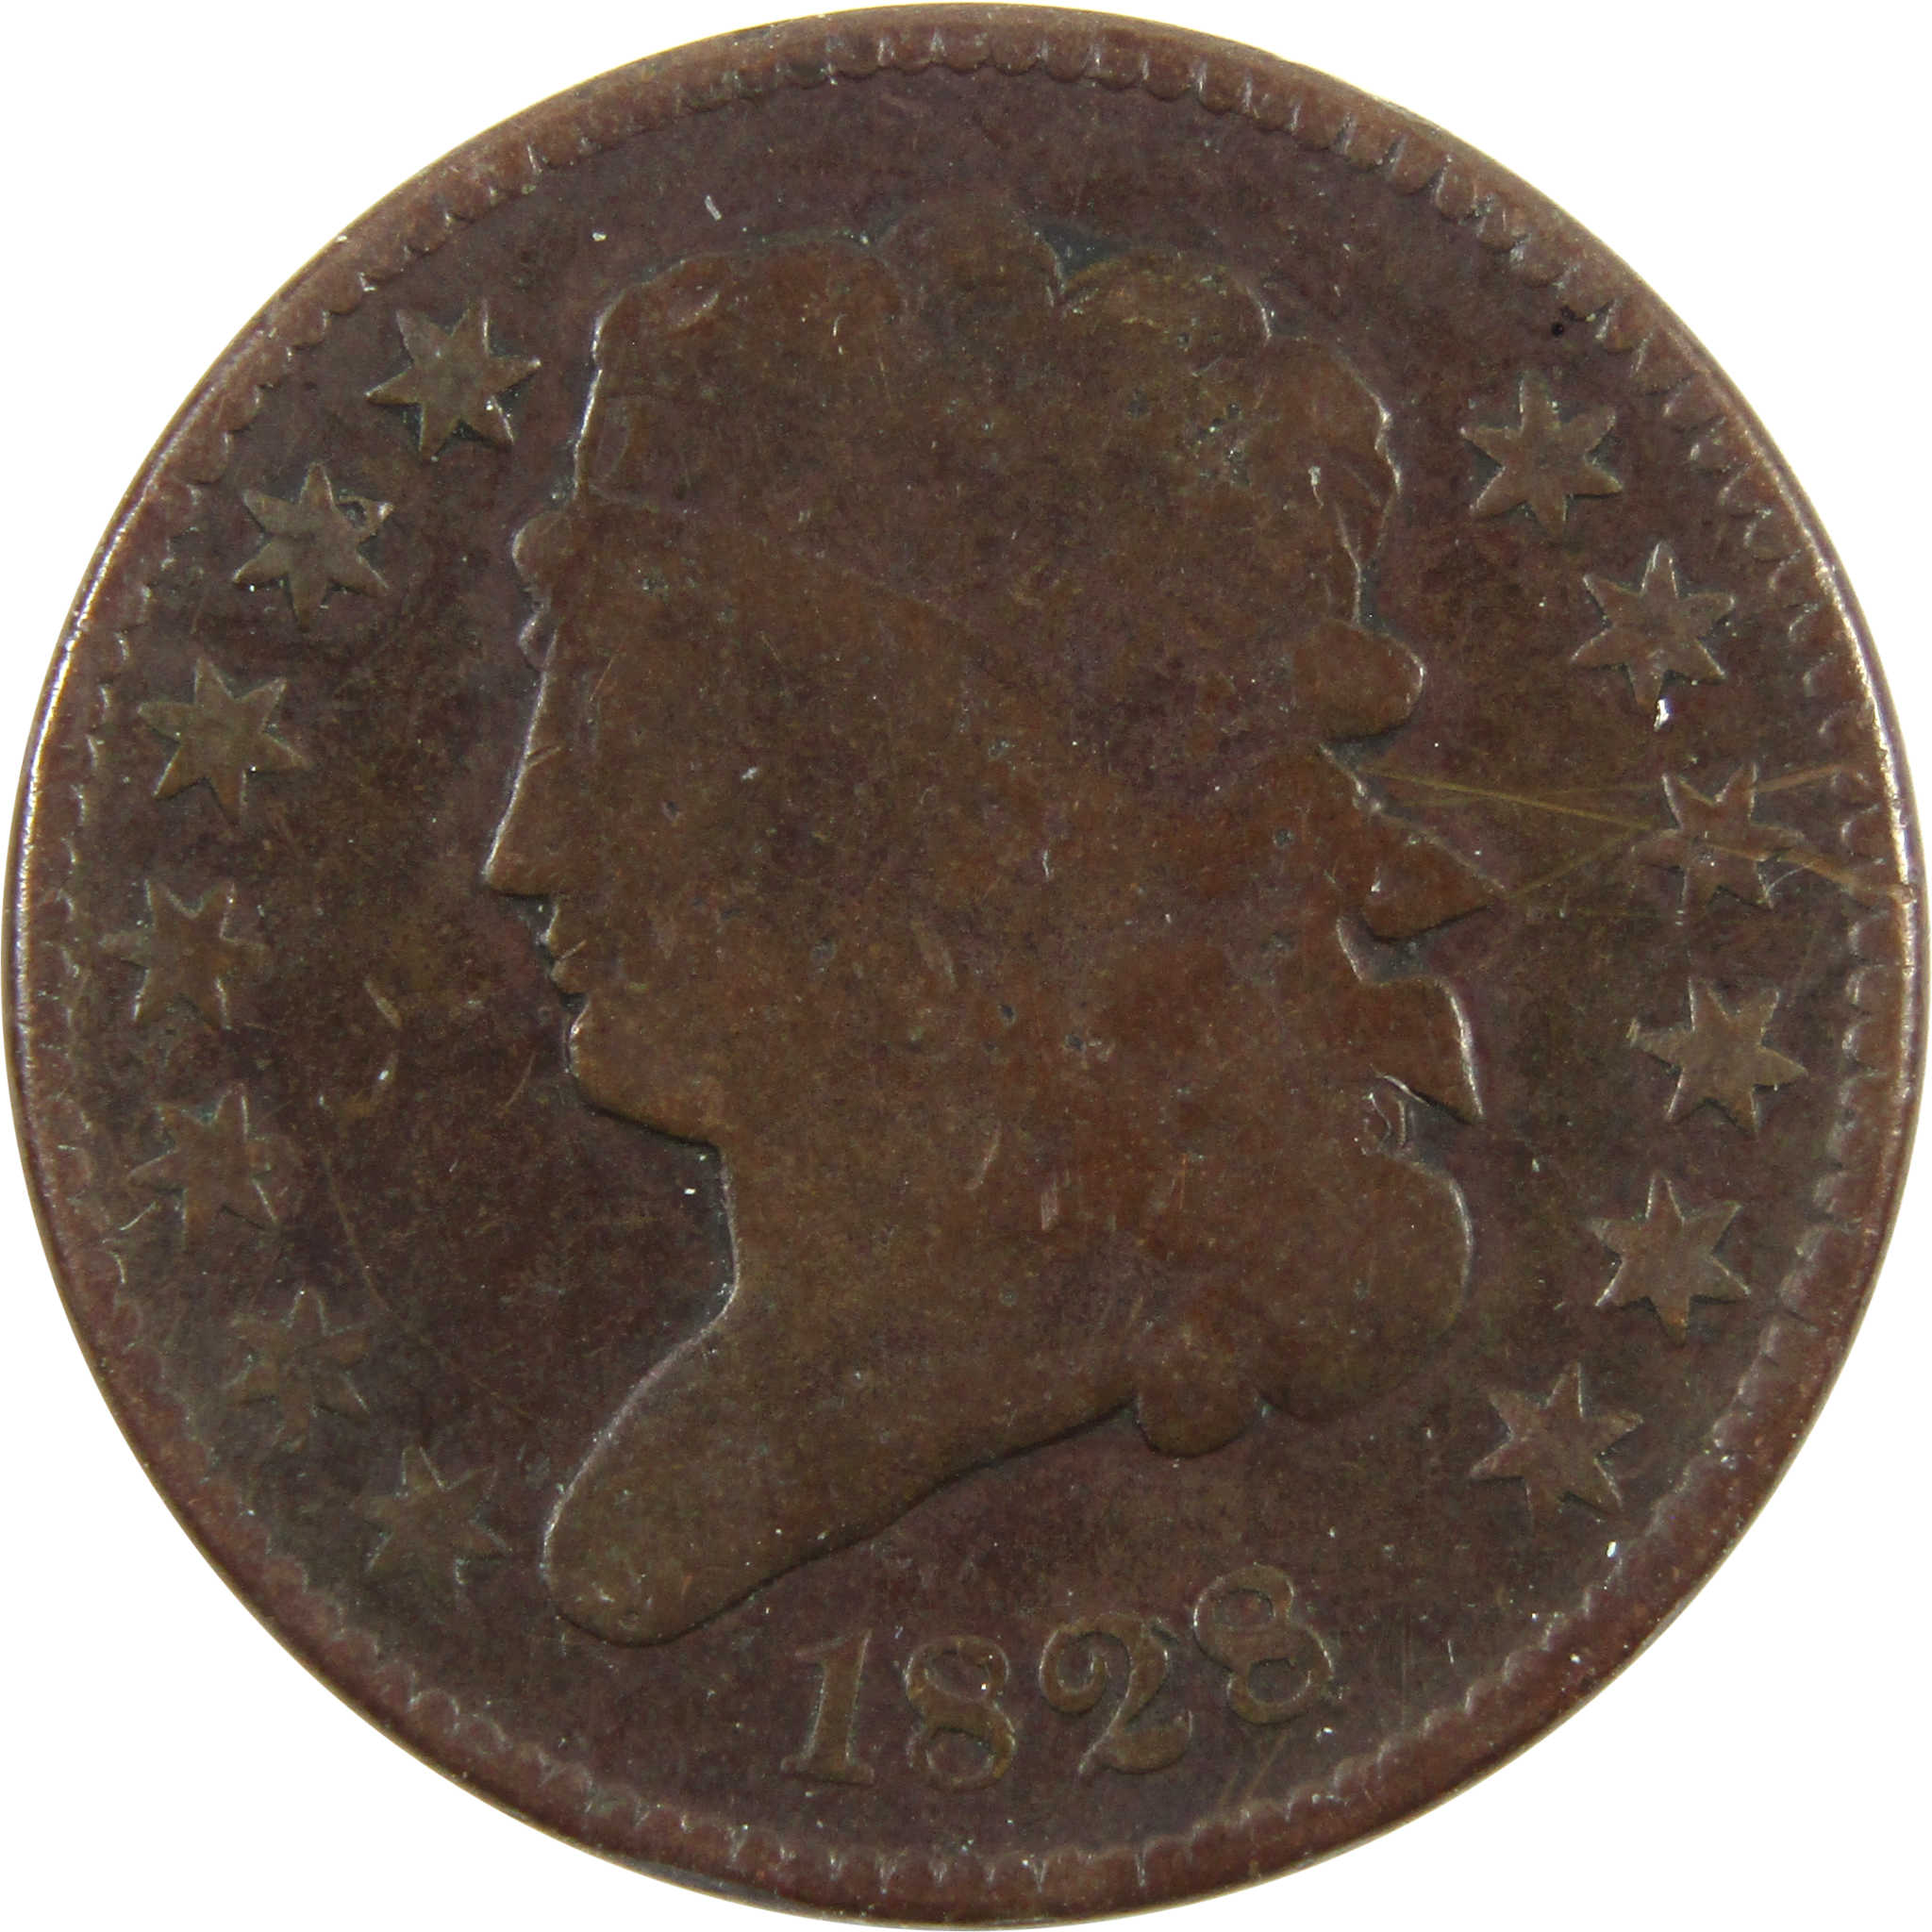 1828 13 Stars Classic Head Half Cent G Good Copper Penny SKU:I11221